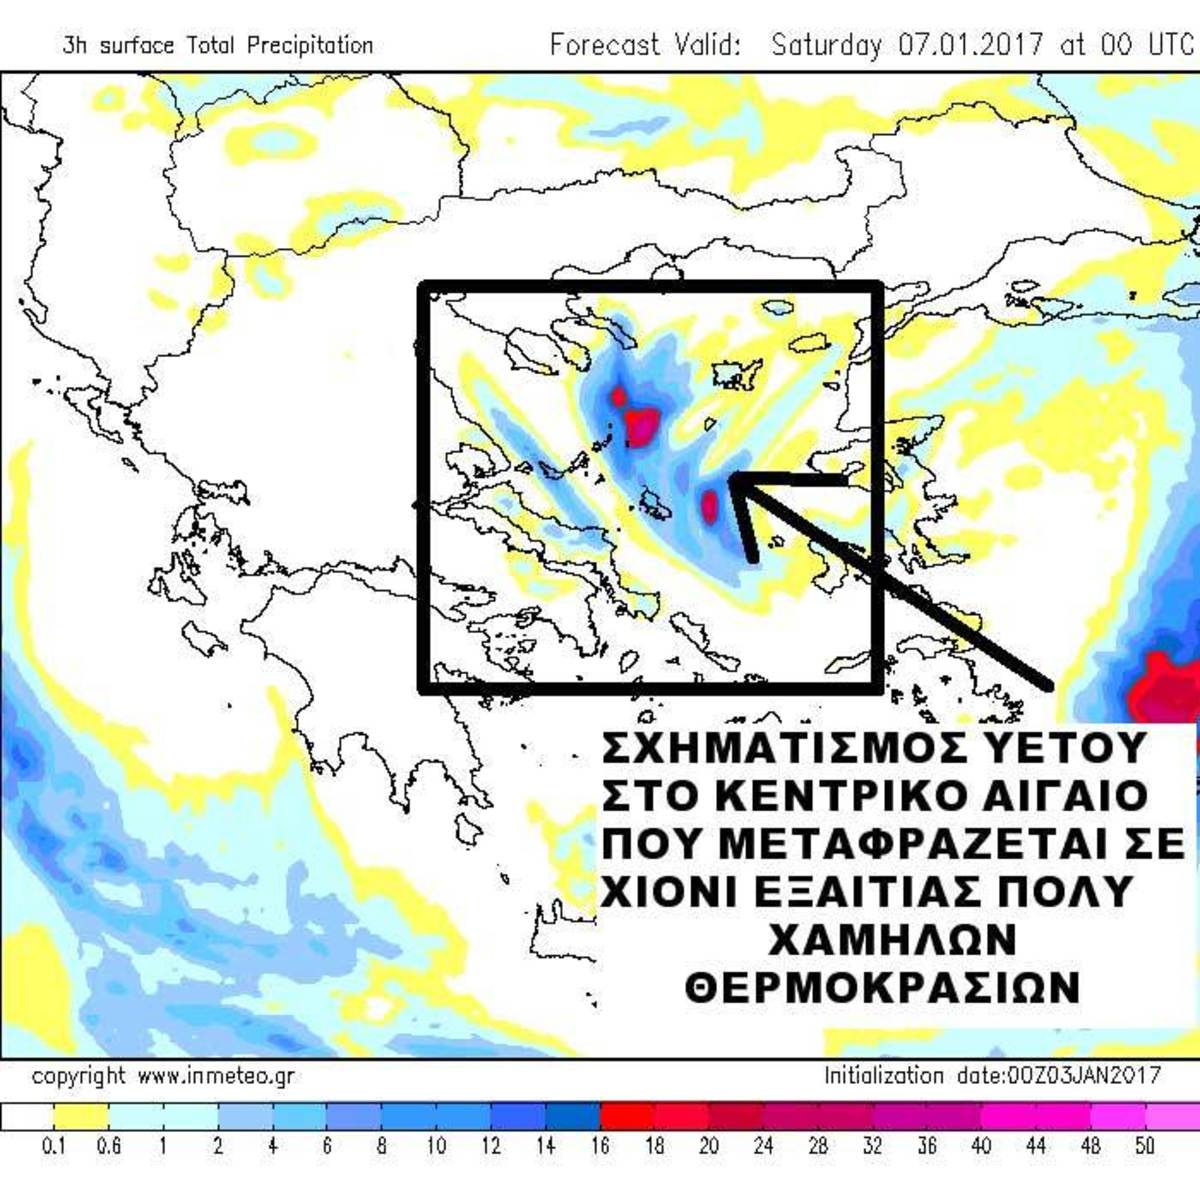 Καιρός: Το φαινόμενο “Aegean Lake Effect” θα φέρει την “Σιβηρία” ακόμα και στην Αττική! [Χάρτες]